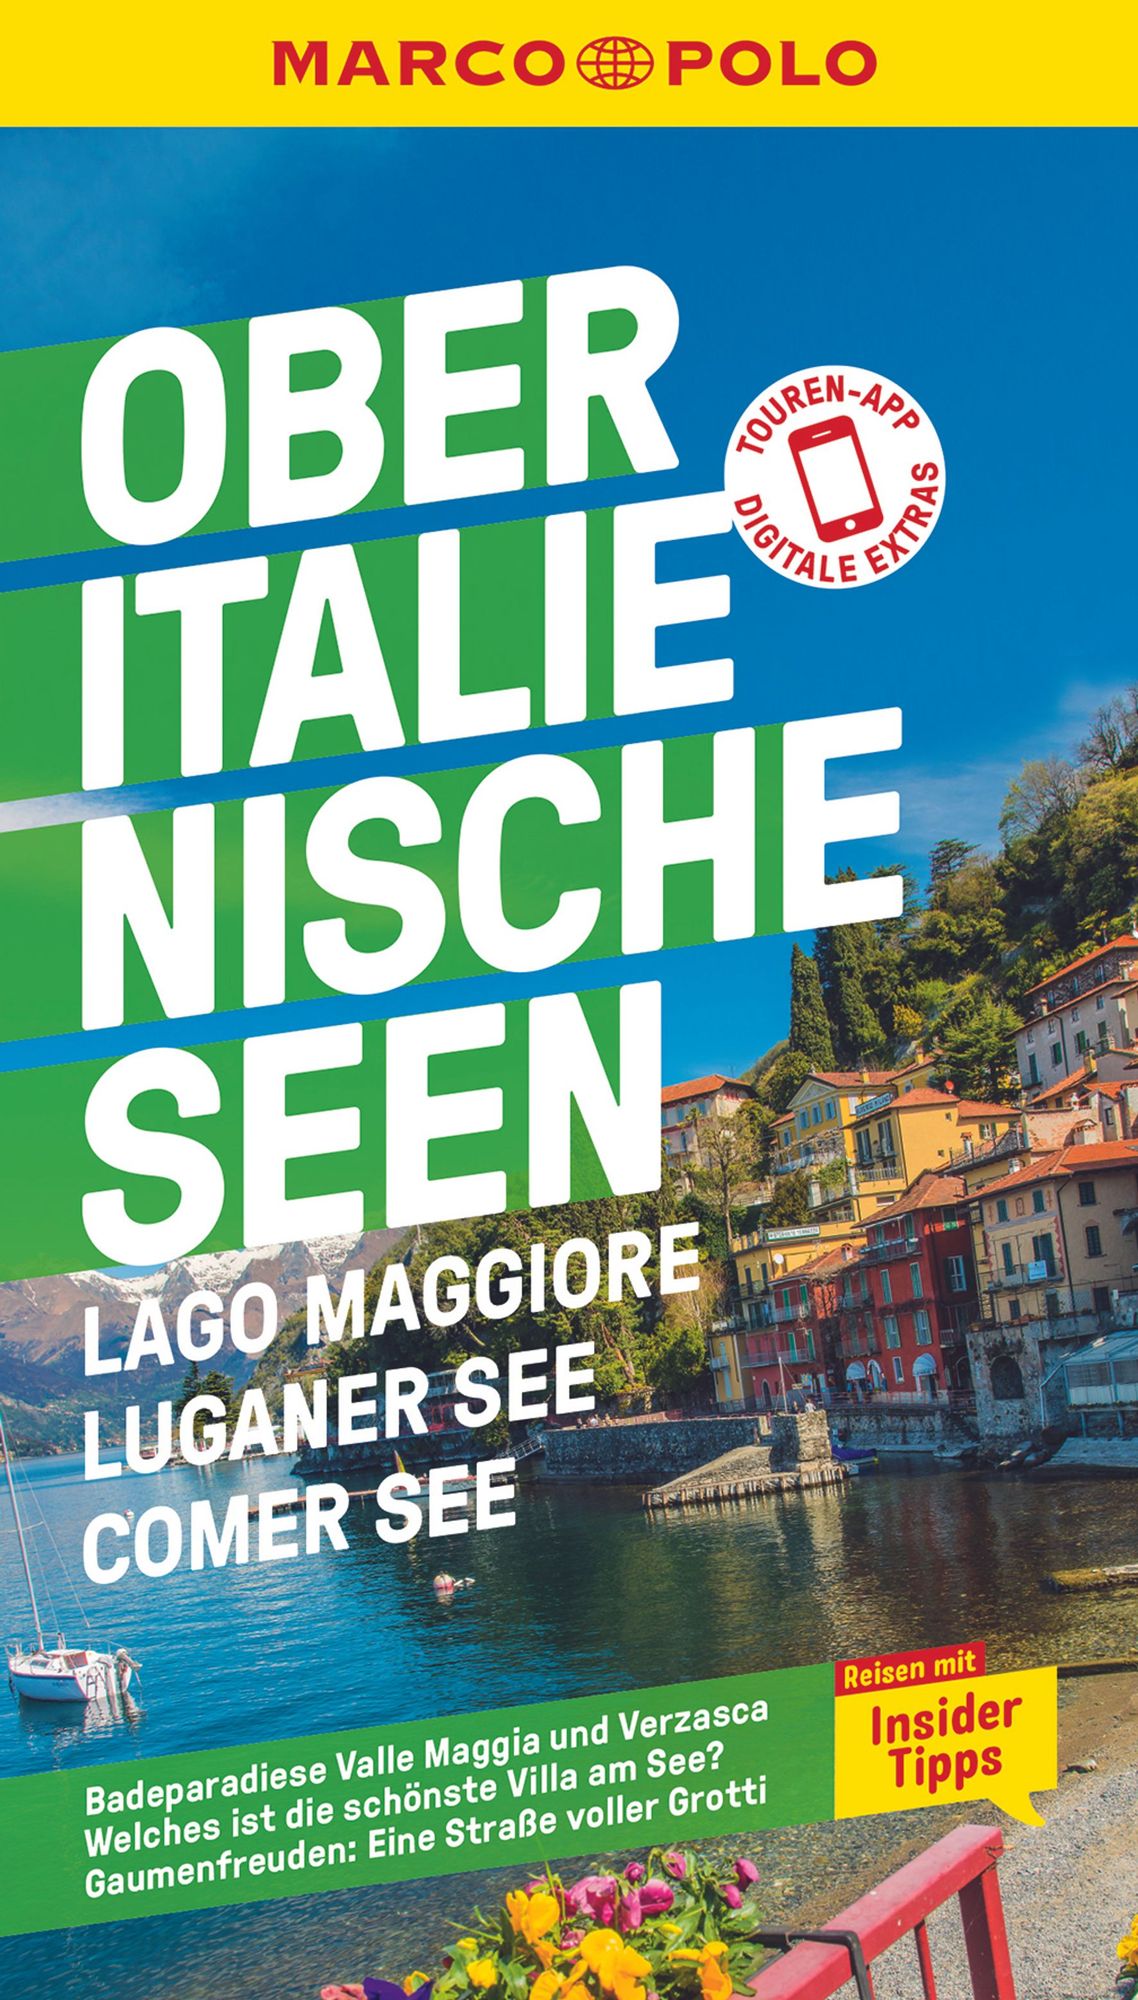 Luganer See Lago Maggiore Comer: See MARCO POLO Reiseführer Oberitalienische Seen 